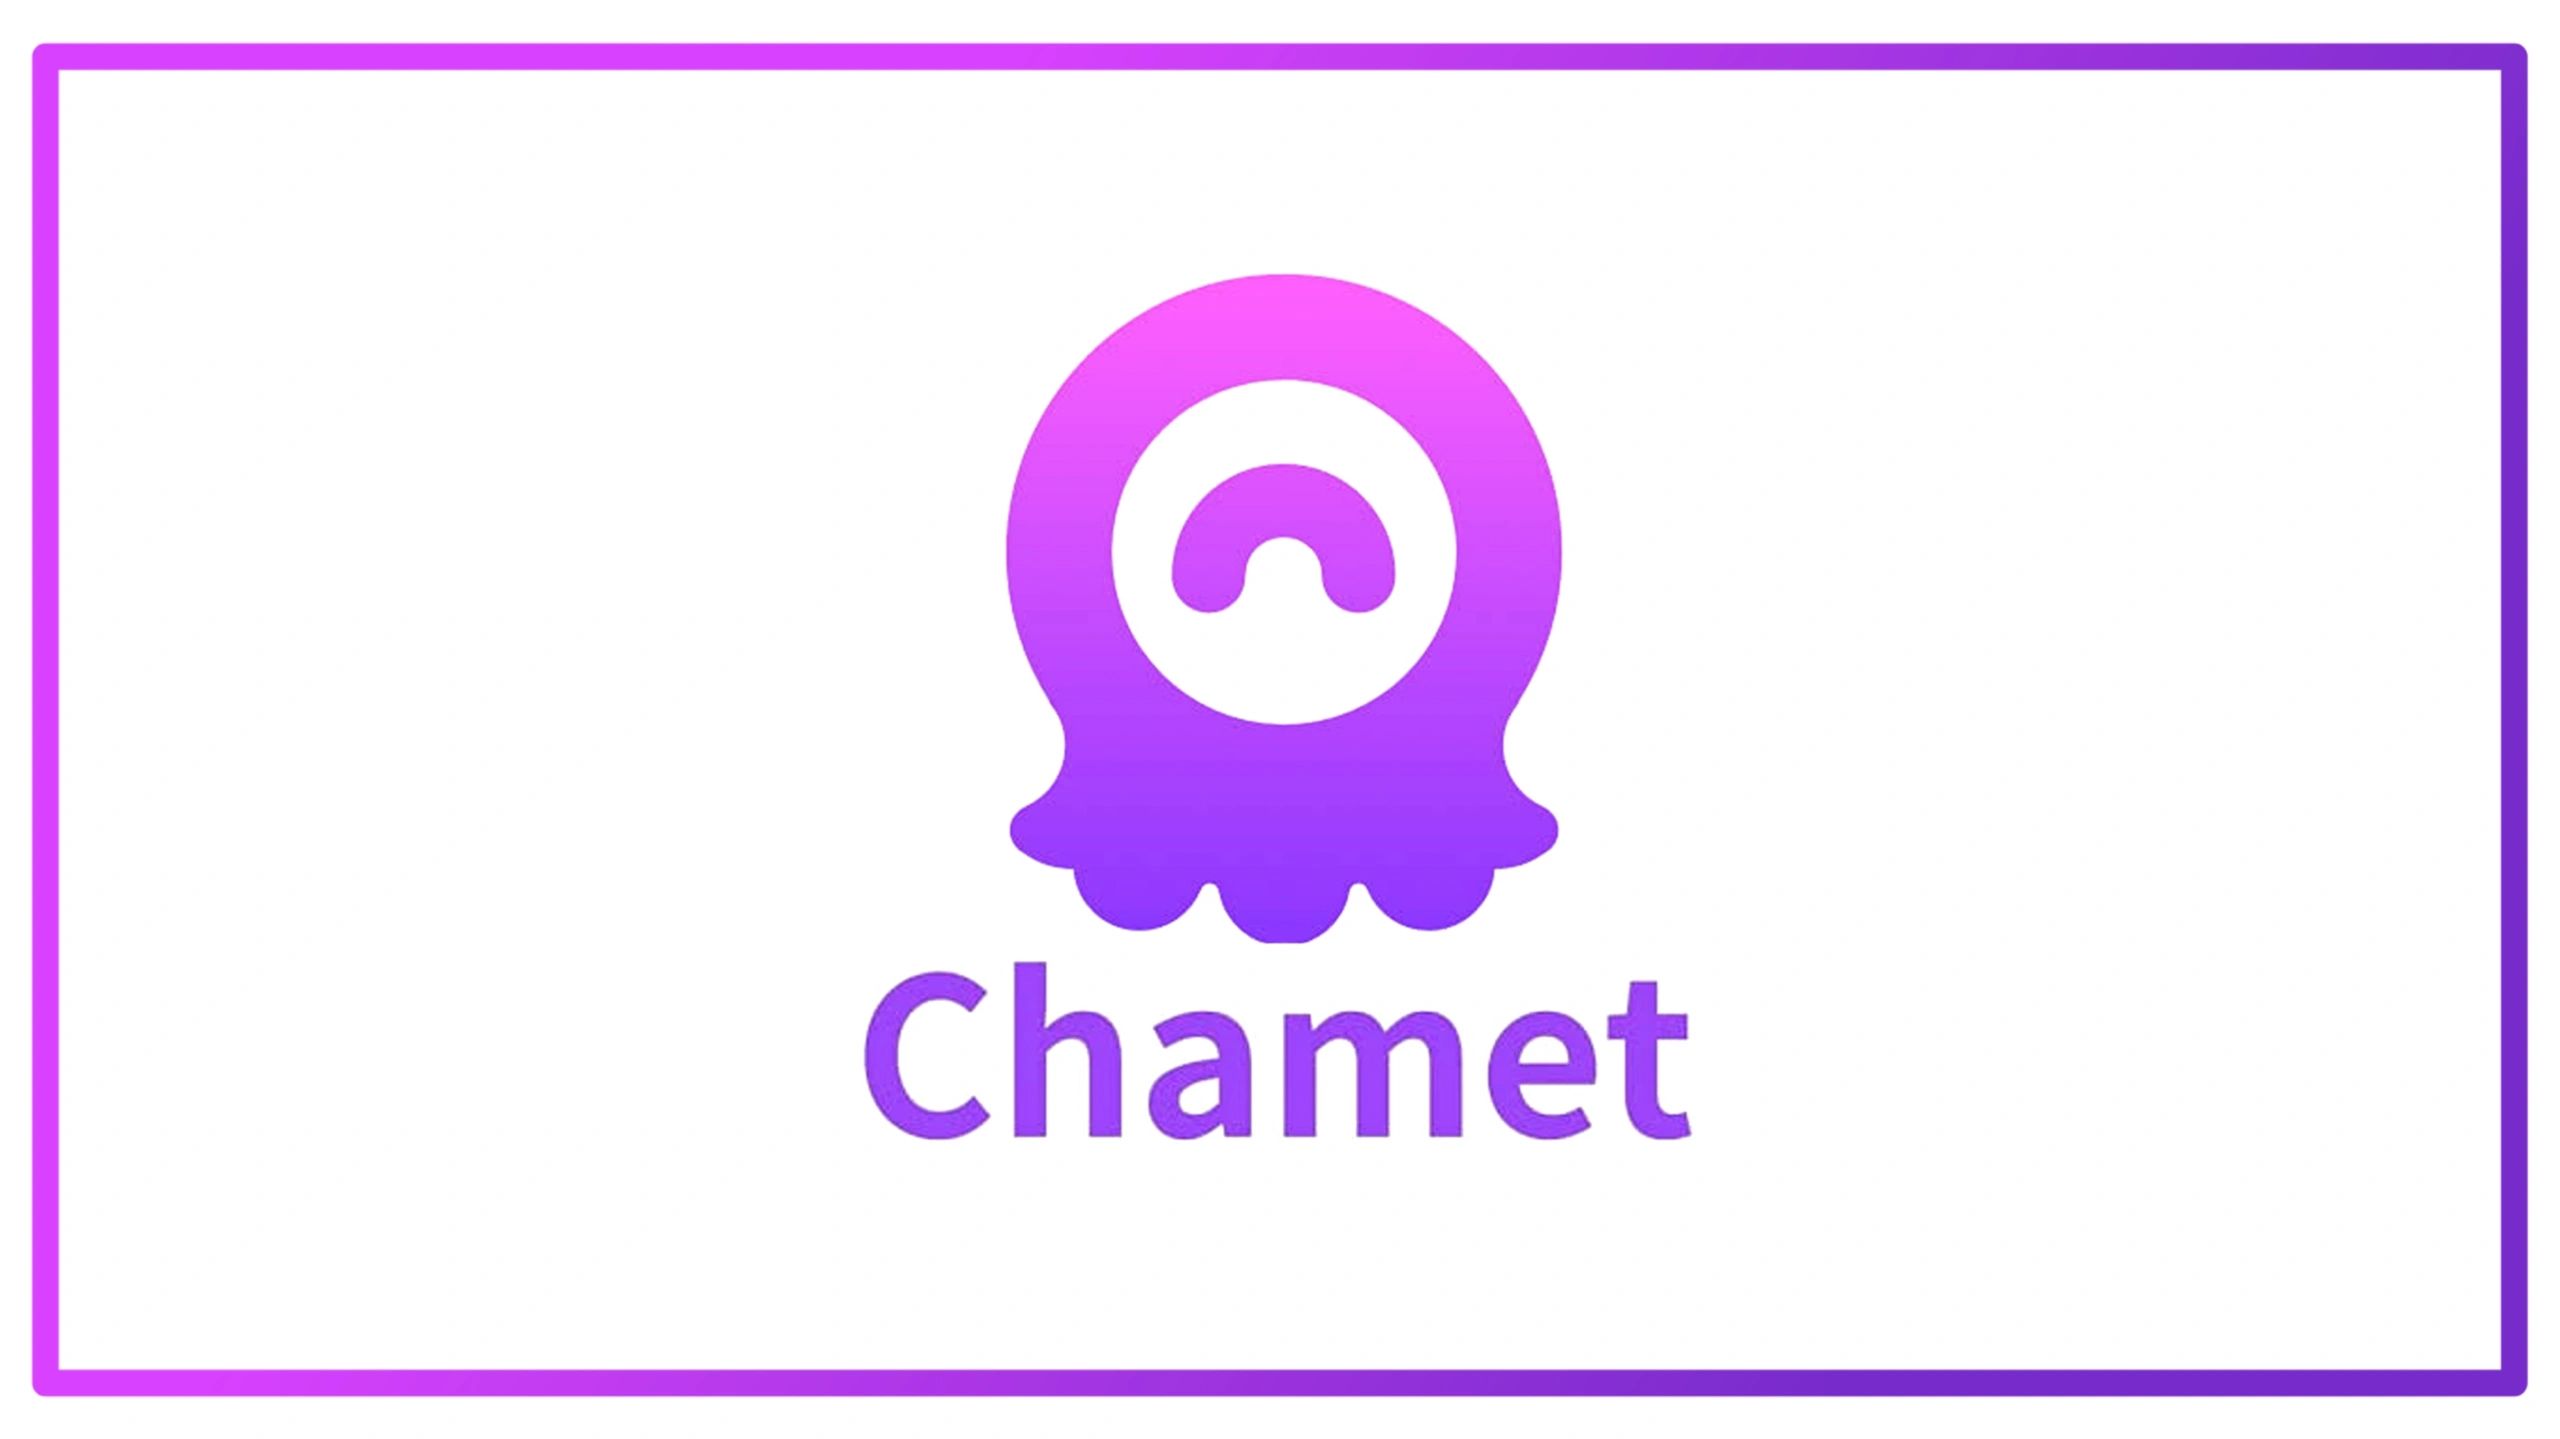 chamet, chamet agnecy, become chamet agnet, chamet agency number, chamet agency login, chamet agent